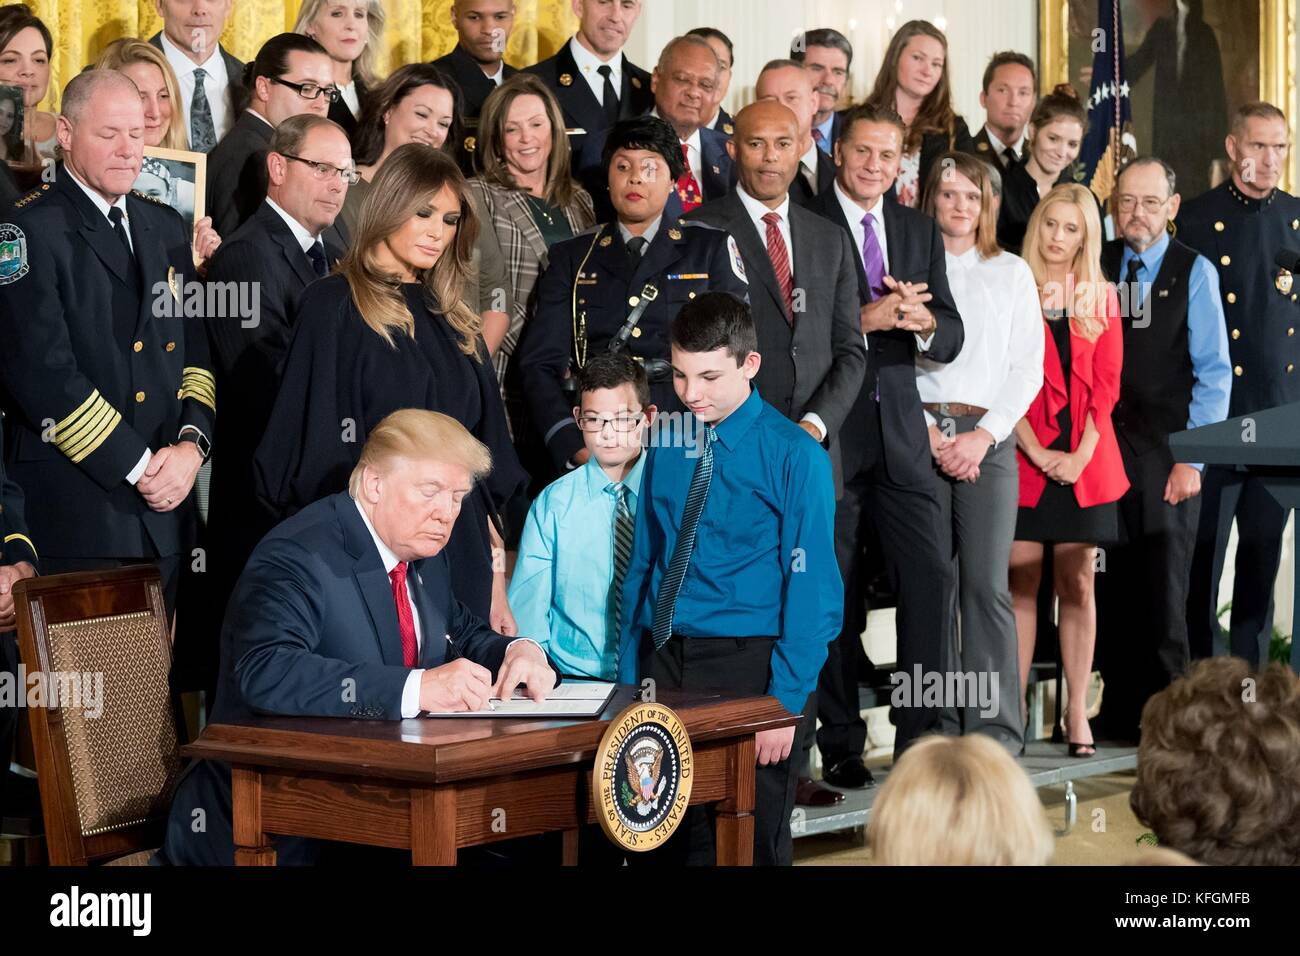 Président américain Donald Trump, rejoint par la première dame melania trump, signe un mémorandum présidentiel déclarant la crise aux opiacés un programme national de santé publique d'urgence dans l'east room de la maison blanche, le 26 octobre 2017 à Washington, DC. Banque D'Images